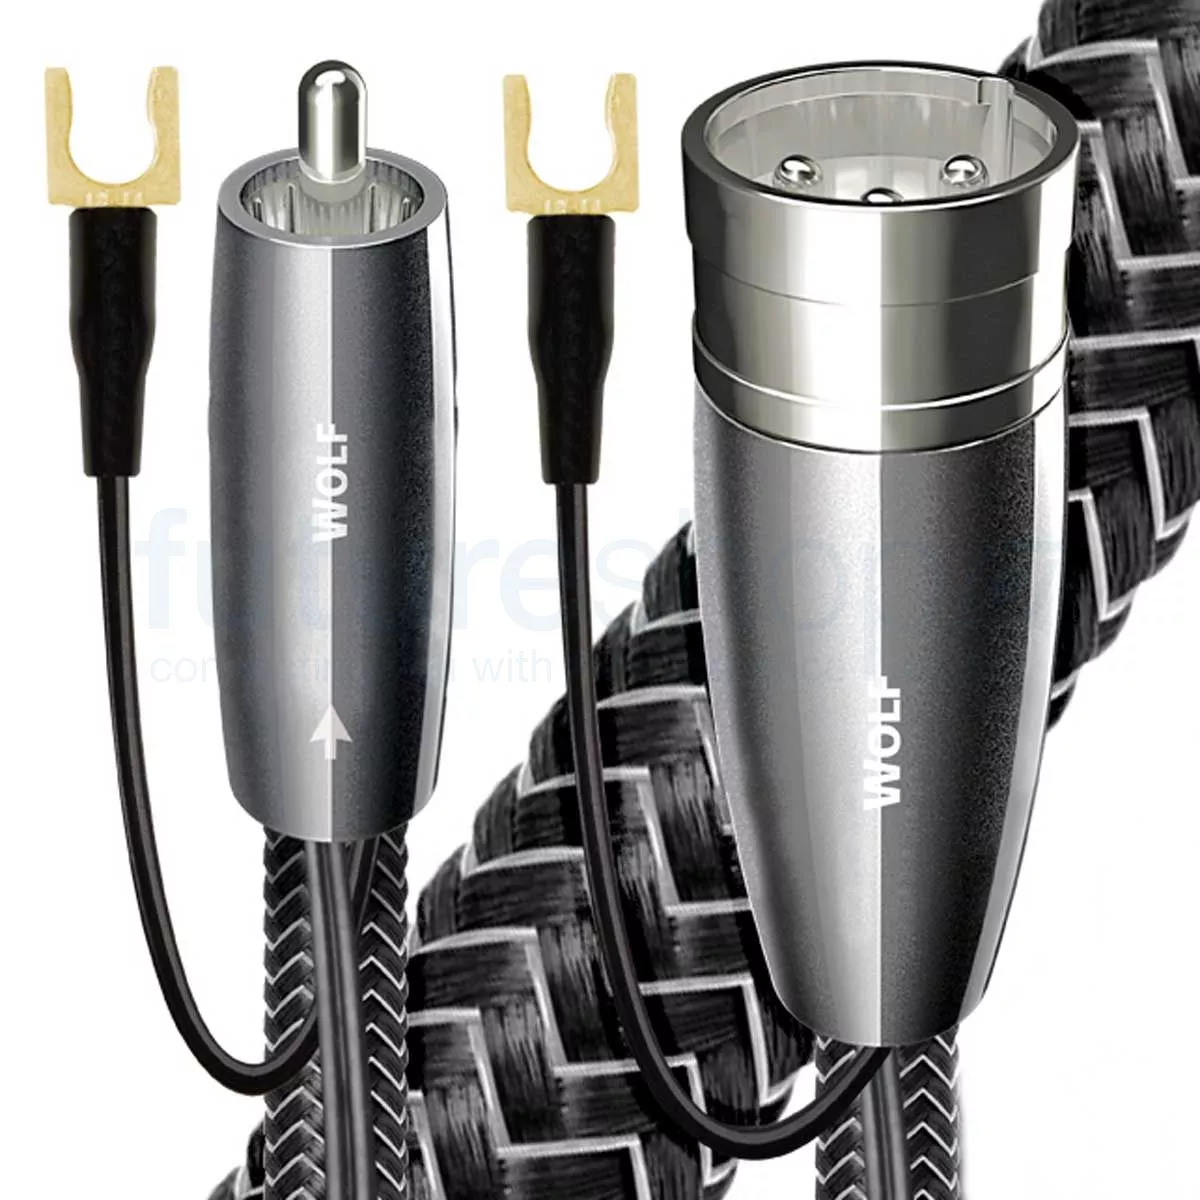 Cablu subwoofer XLR - XLR AudioQuest Wolf 2 m, [],audioclub.ro